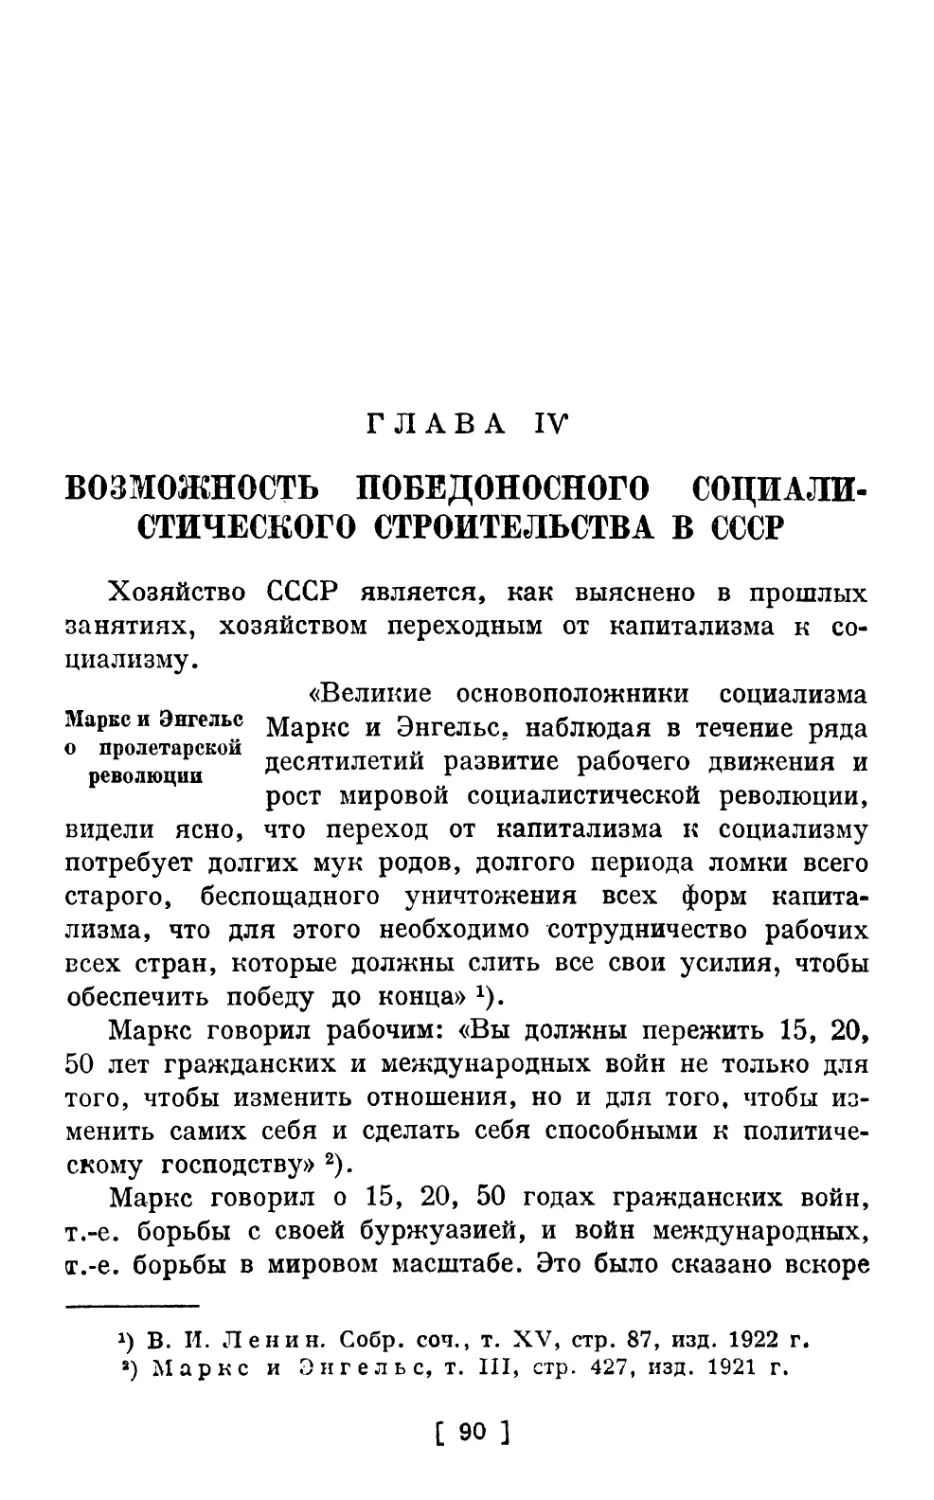 Глава IV. Возможность победоносного социалистического строительства в СССР